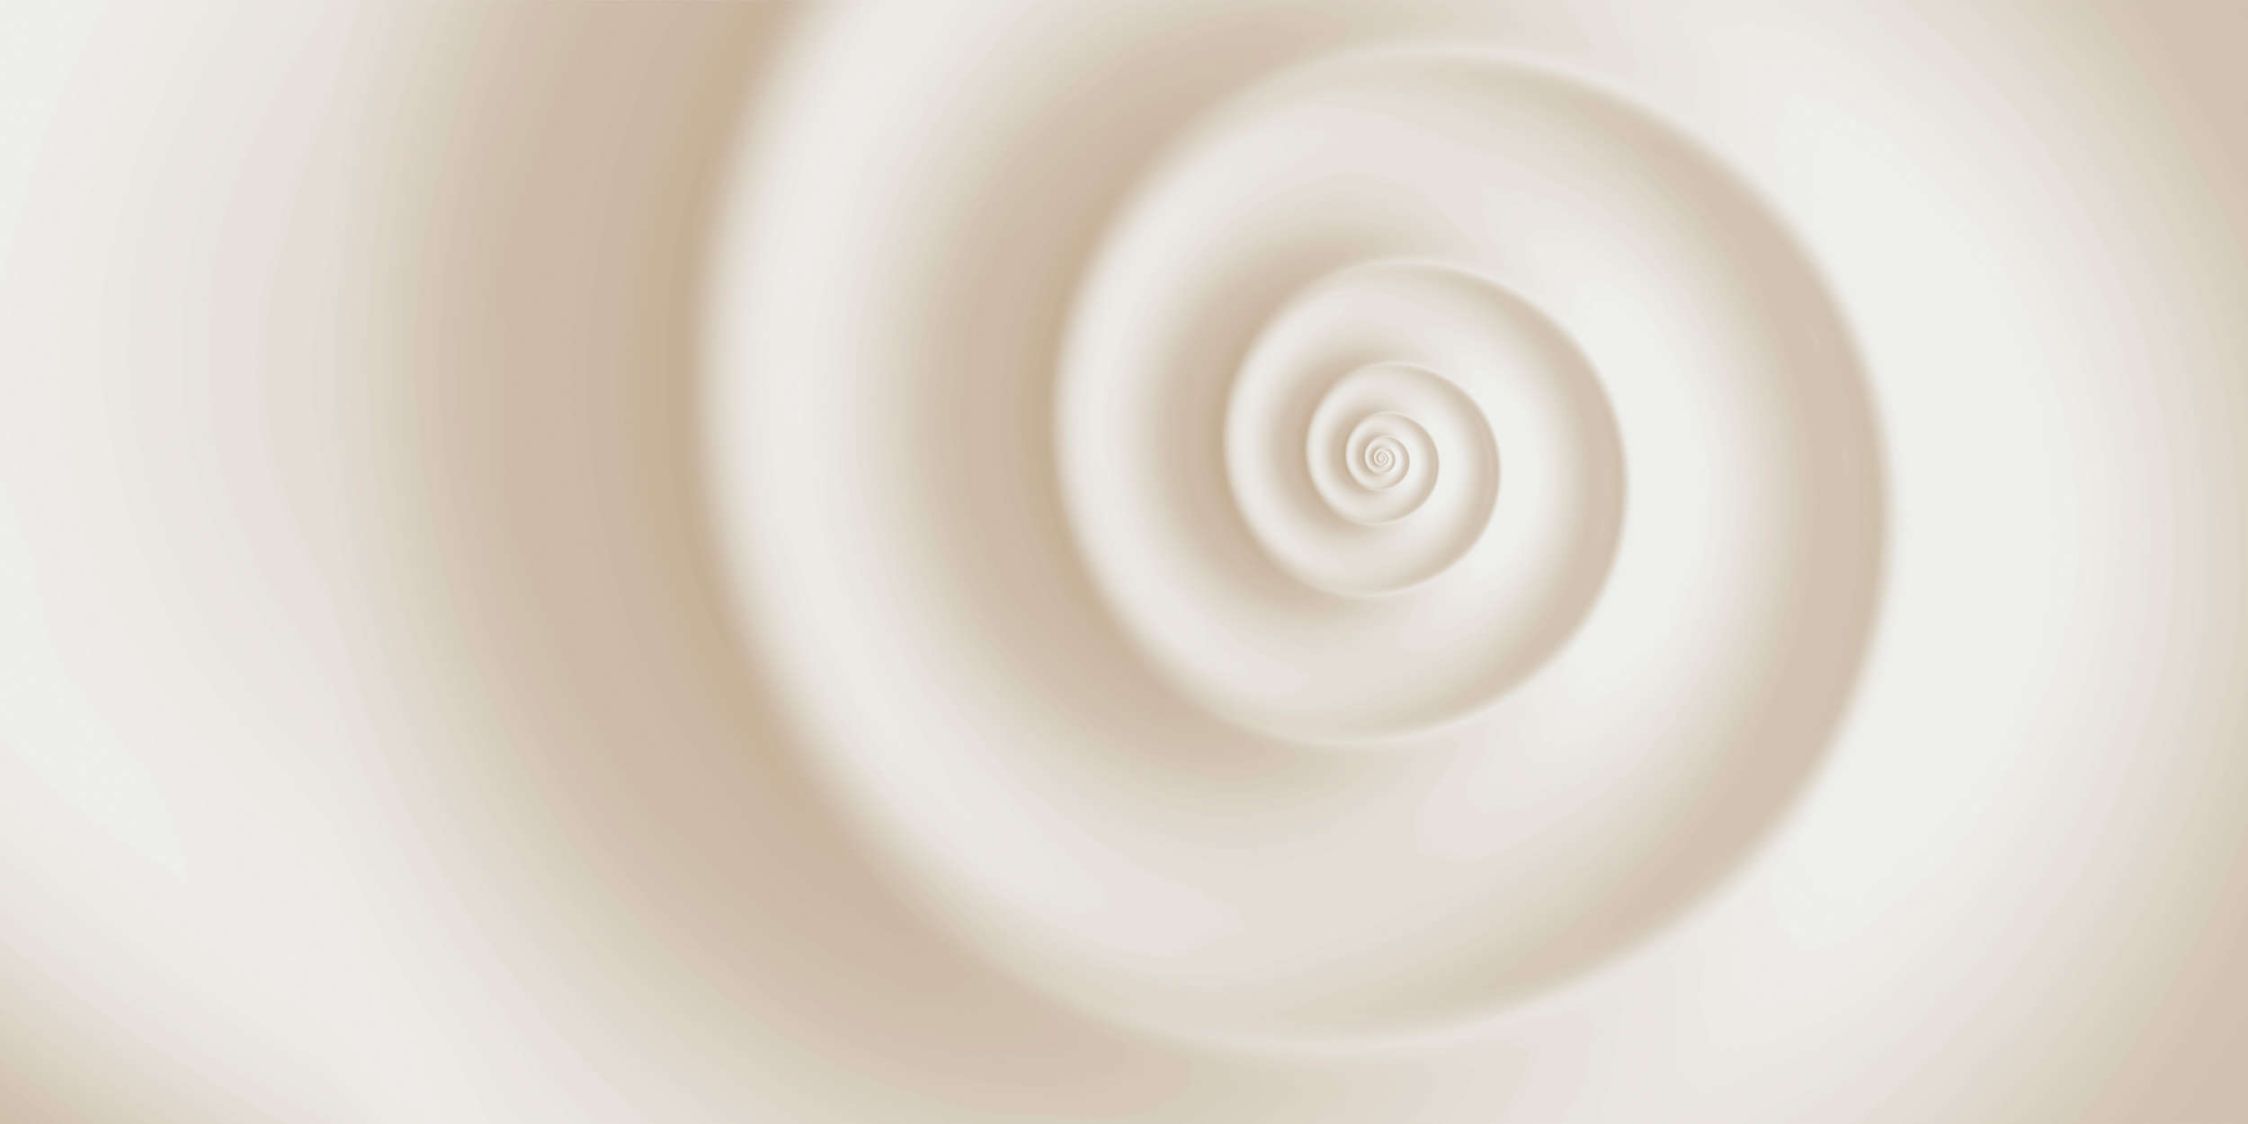             Fotomural »remolino« - Ligero dibujo en espiral - Tela no tejida de alta calidad, lisa y ligeramente brillante
        